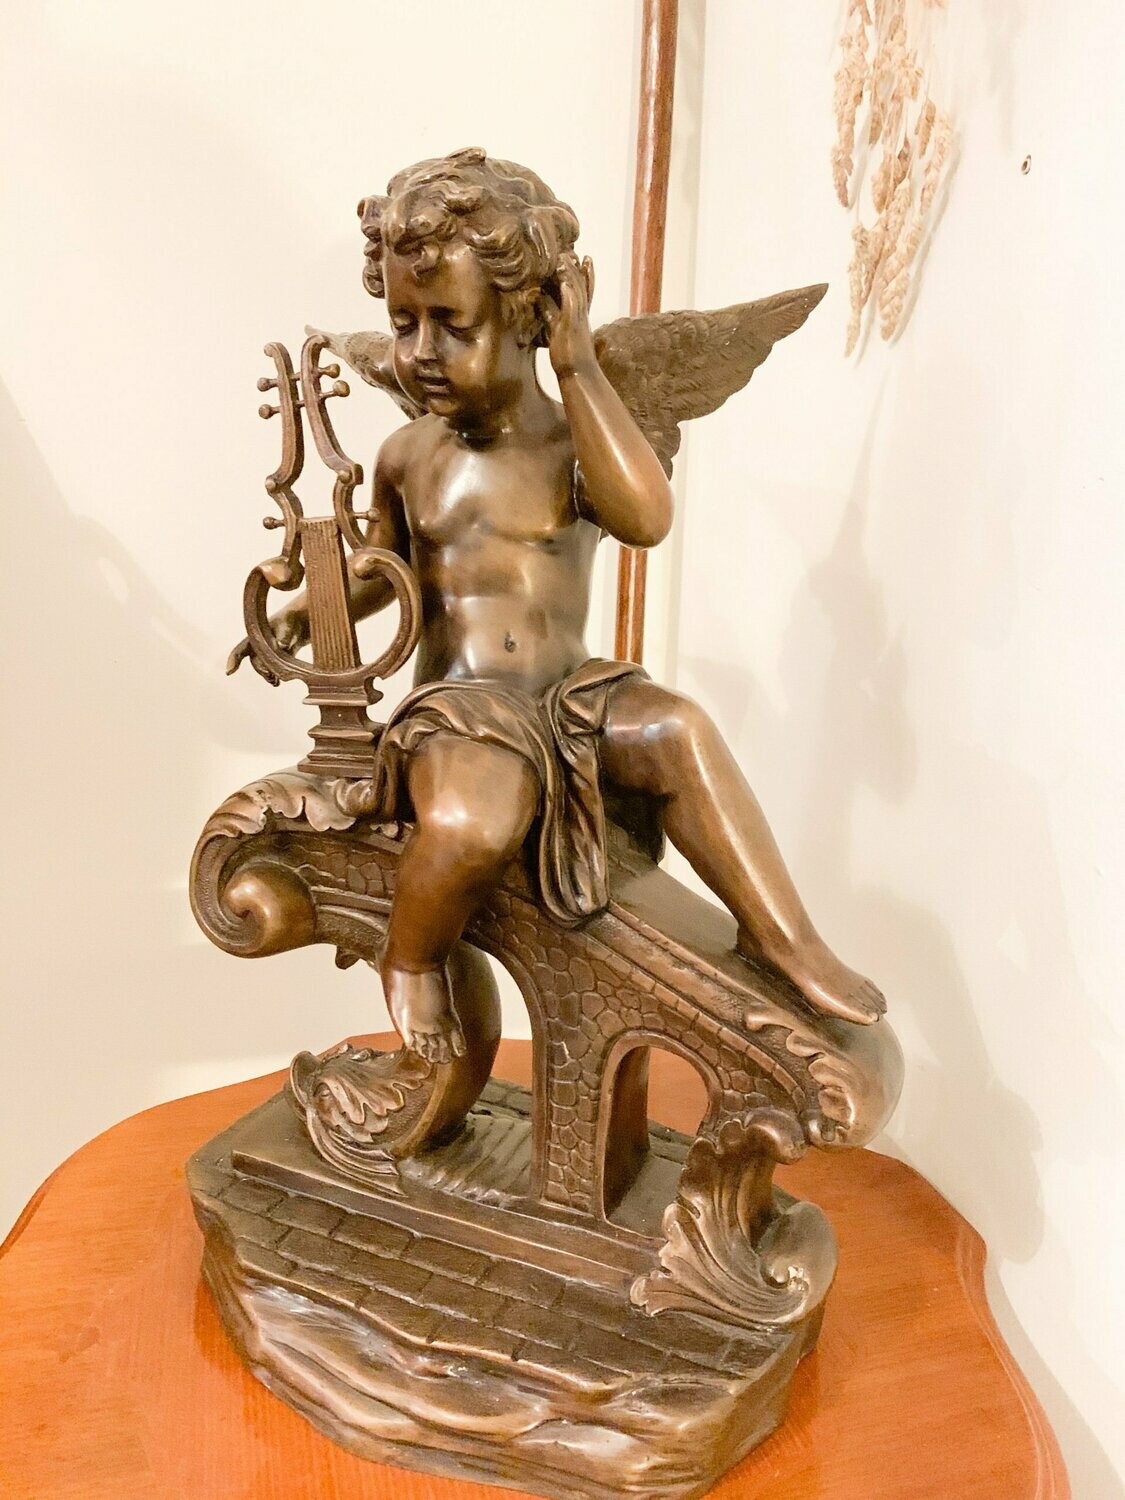 Zeer zwaar en verfijnd vol ENGEL bronzen beeld prachtige uitgewerkte lange vleugels / Statue en bronze plein, ange très lourde raffinée.